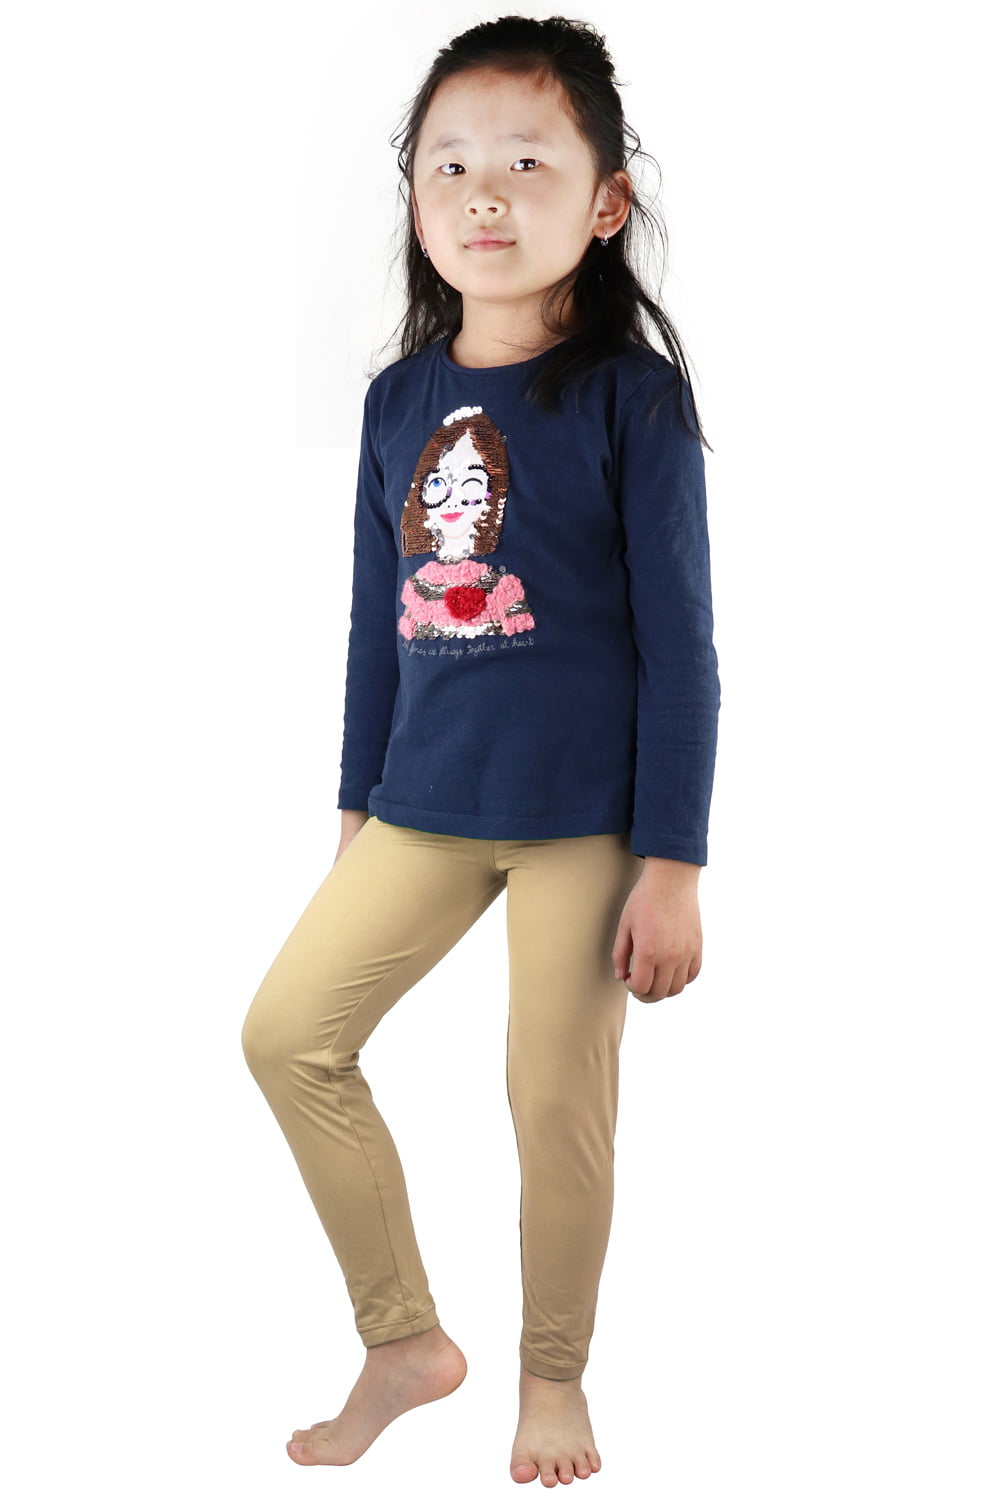 Falari Kids 4 - 9 Years Girl Classic Leggings Buttery Soft Super Comfort 